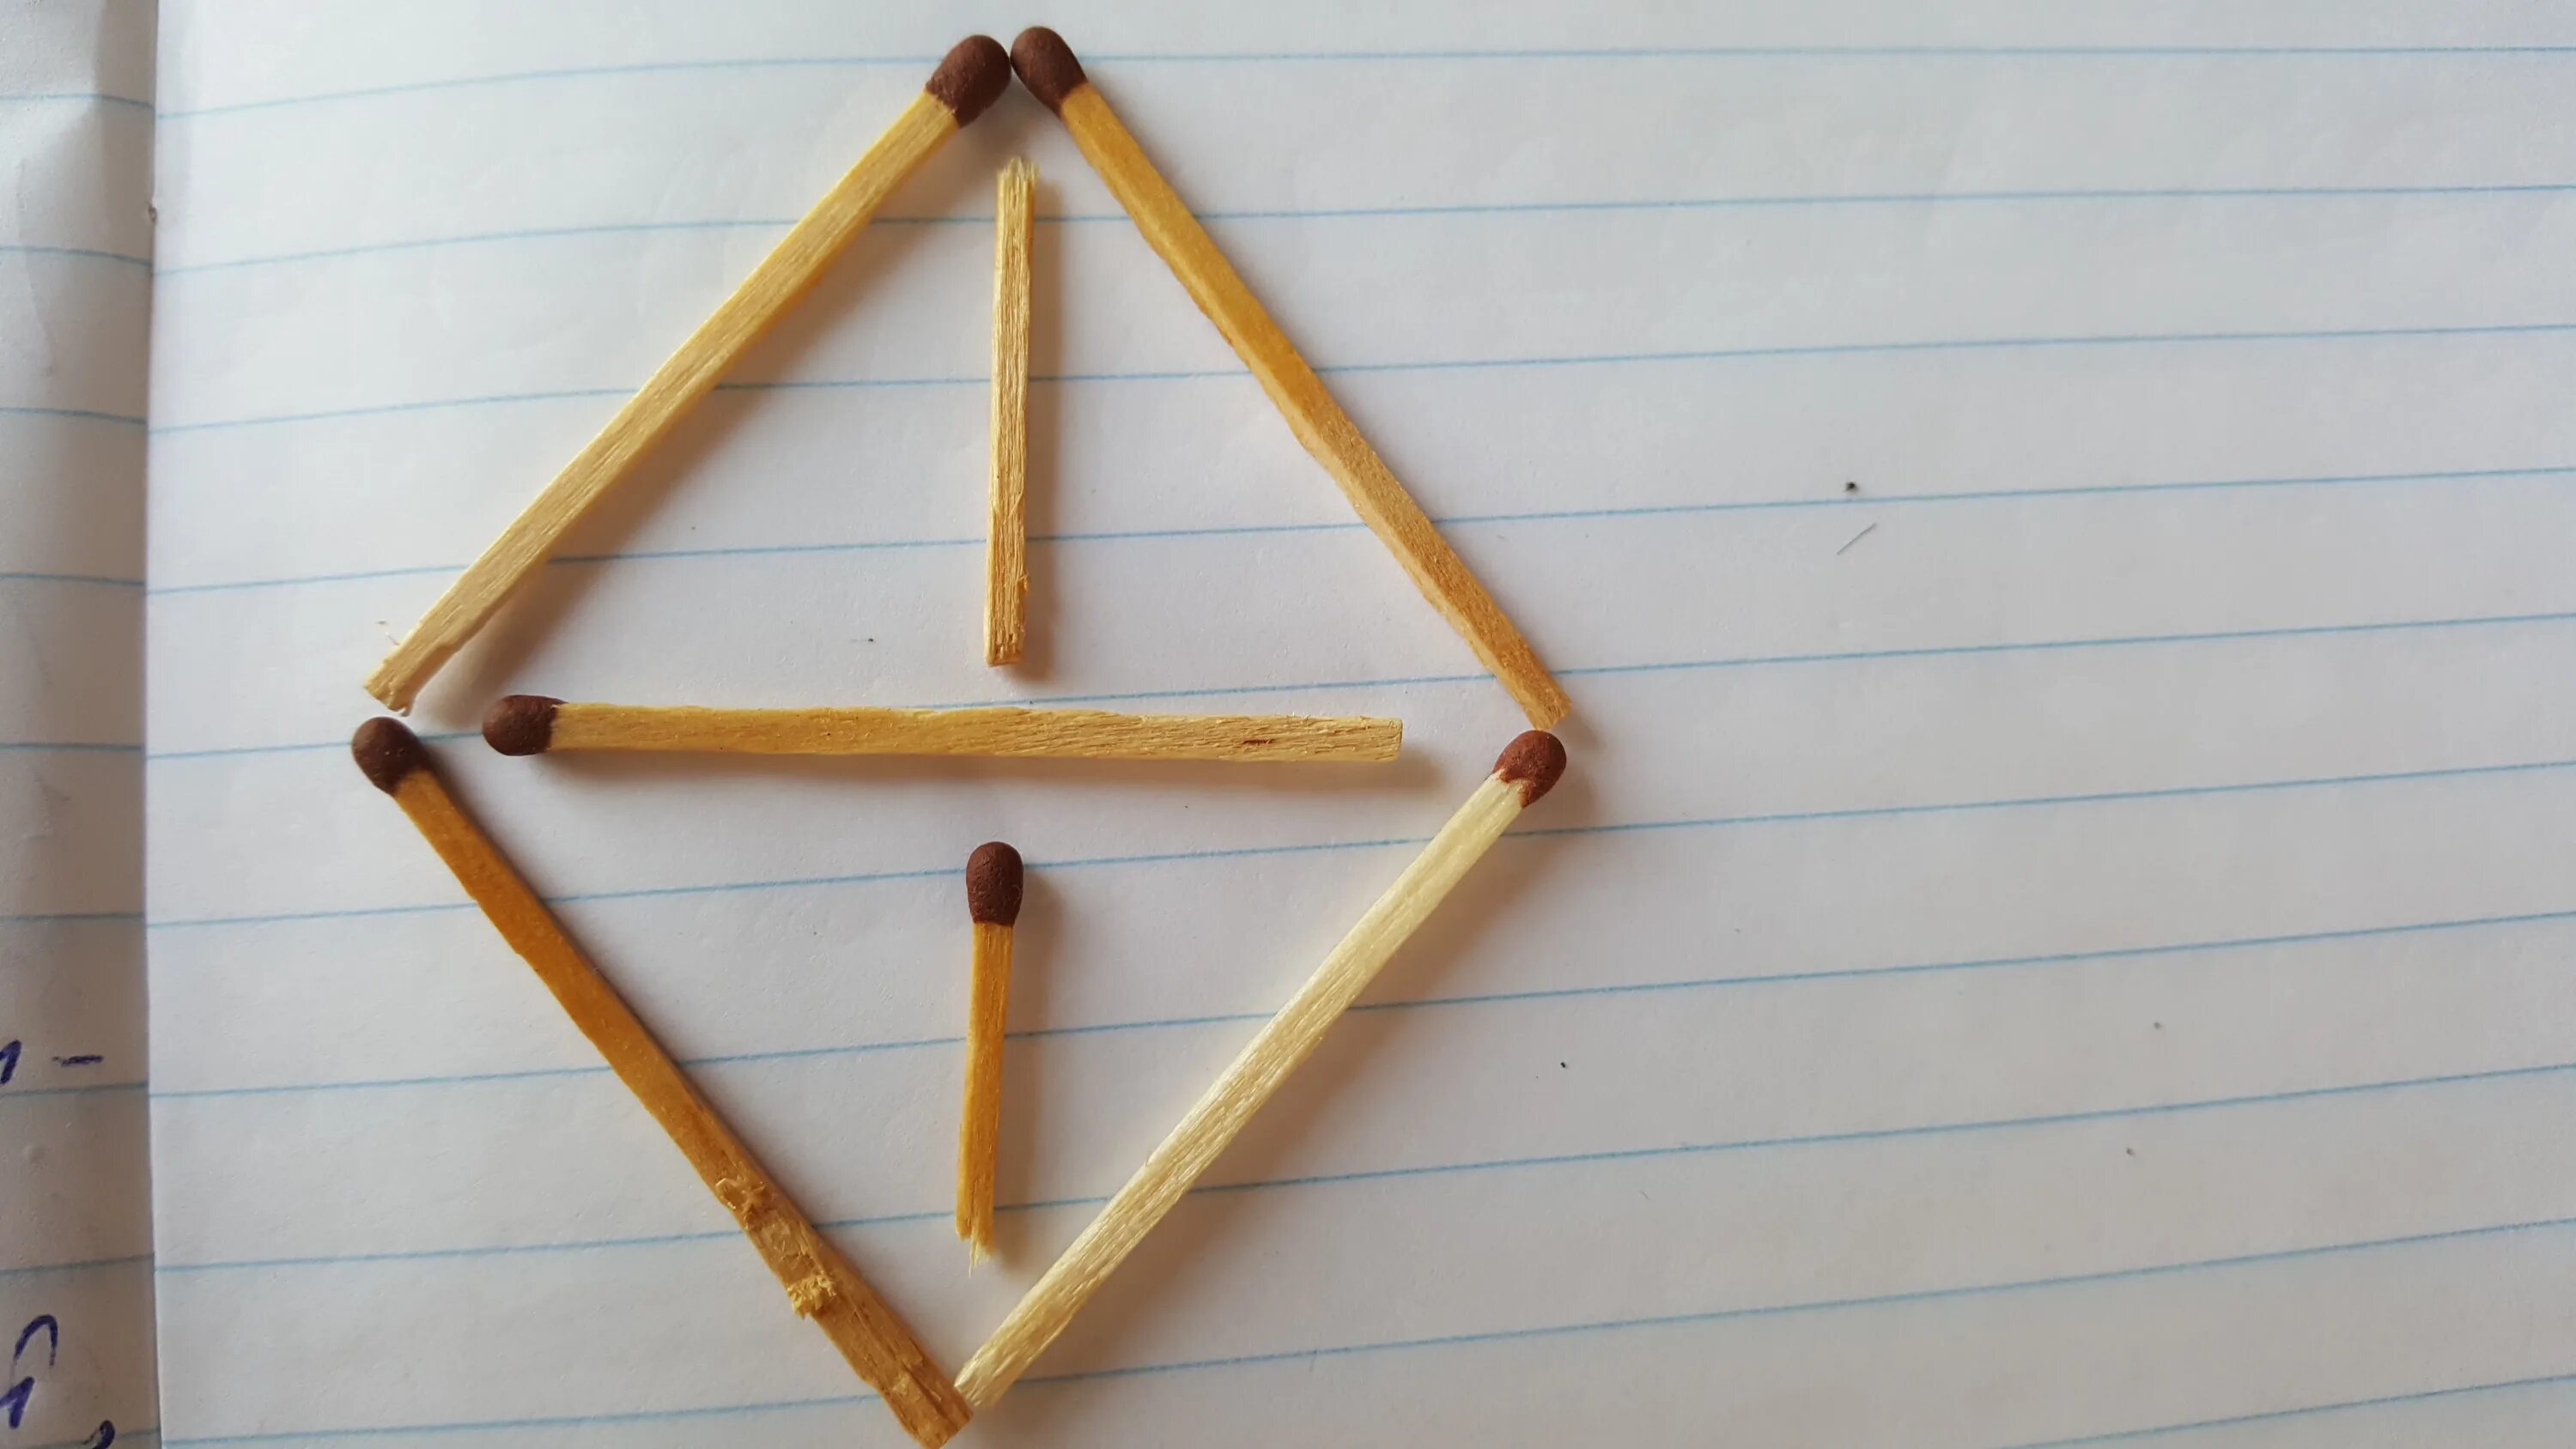 4 Треугольника из 6 спичек. 4 Равносторонних треугольника из 6 спичек. Треугольник из спичек. Пирамида из спичек. Из 6 спичек можно